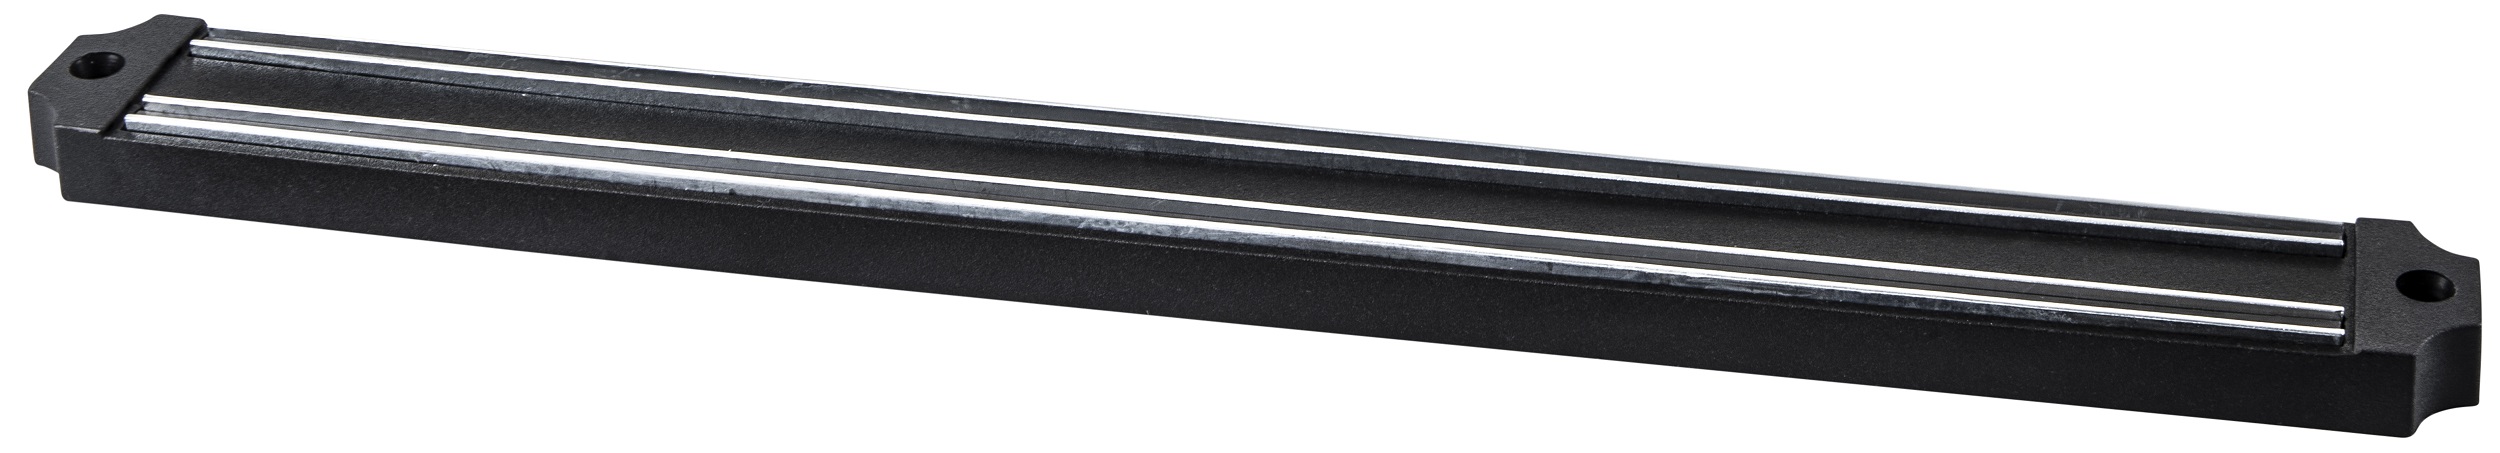 Планка магнітна для ножів RINGEL RG-11009-1 Main в ассортименте